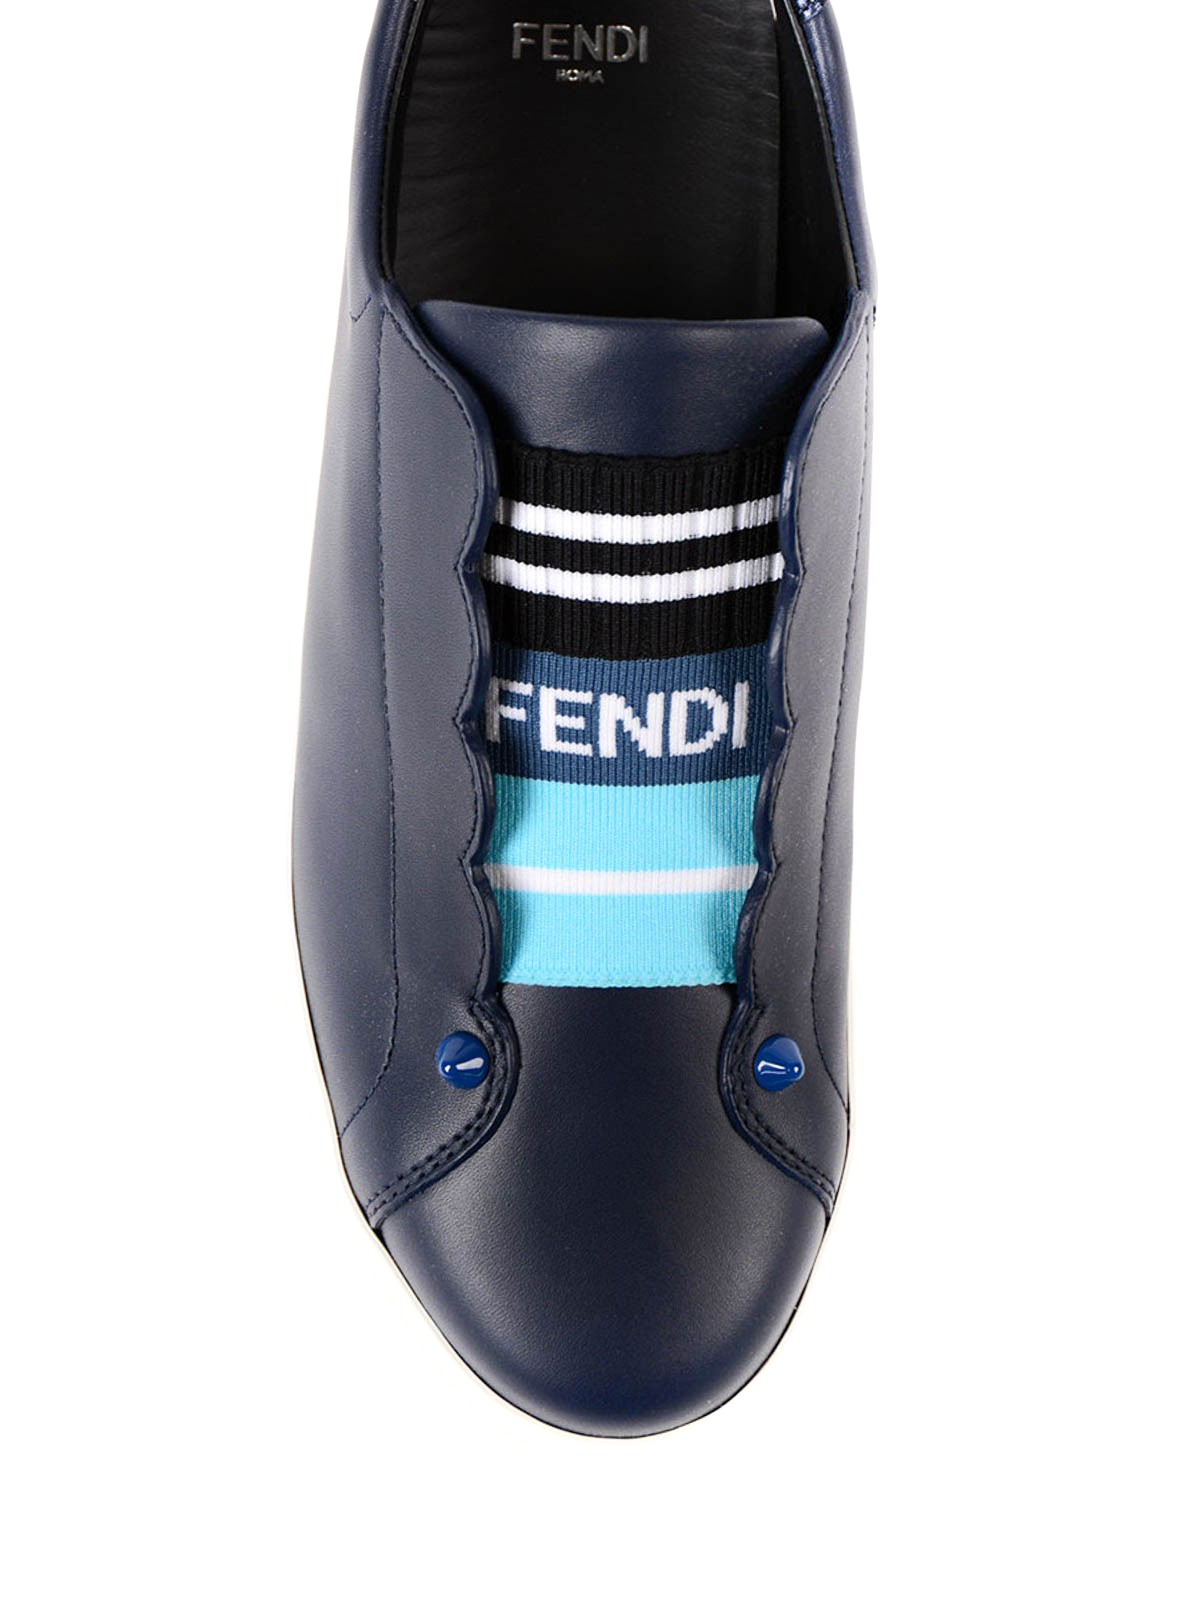 FENDI - Slip-on Sneakers